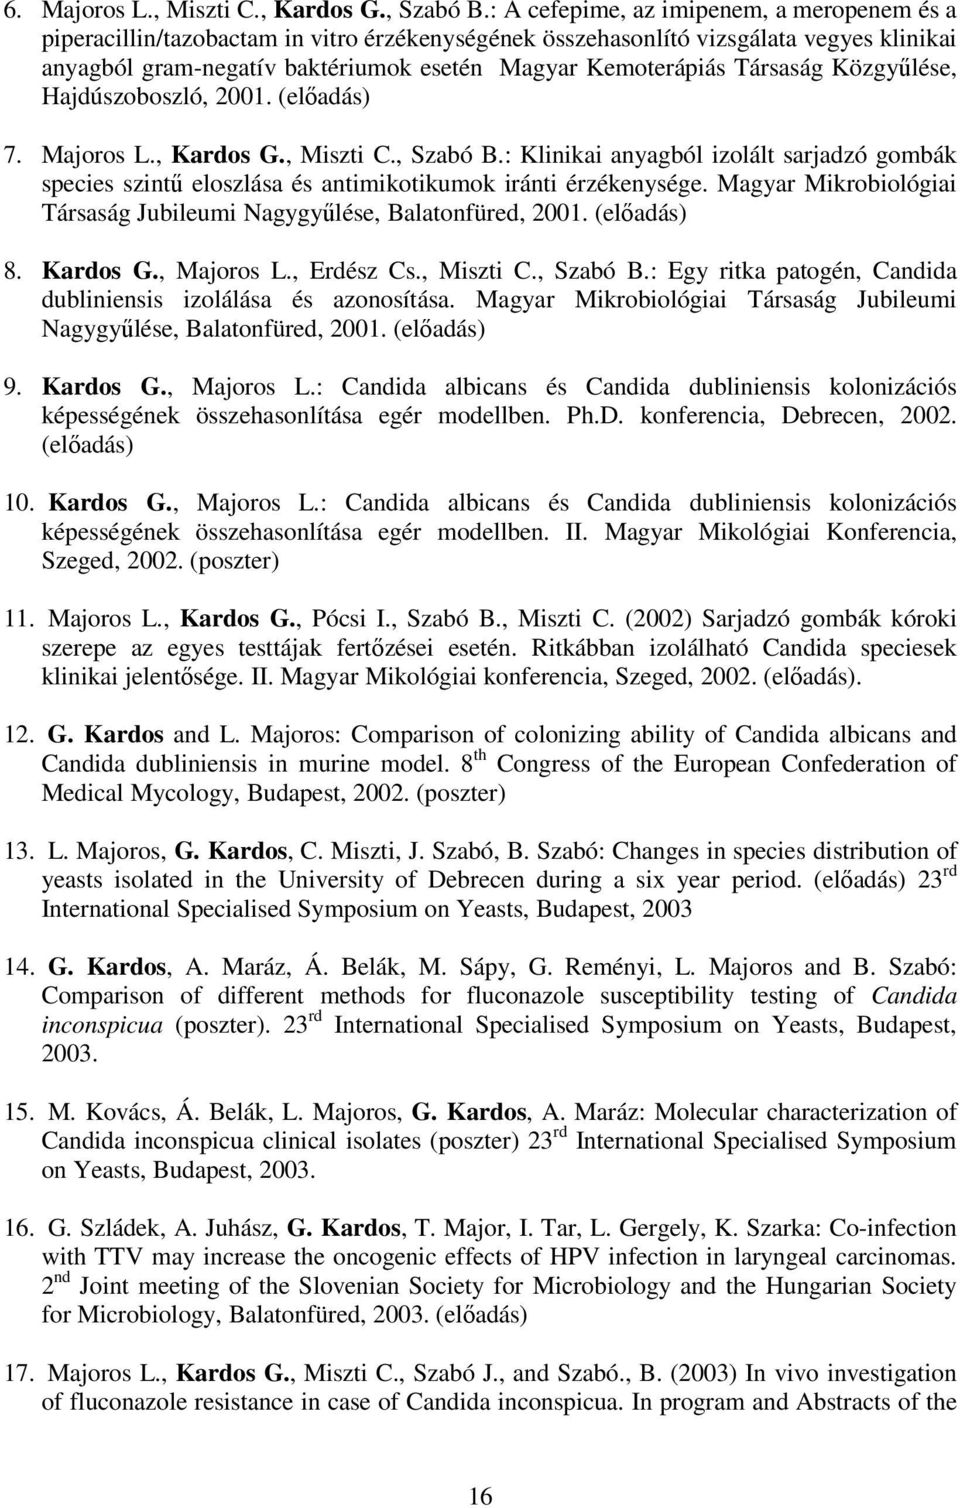 Társaság Közgyőlése, Hajdúszoboszló, 2001. (elıadás) 7. Majoros L., Kardos G., Miszti C., Szabó B.